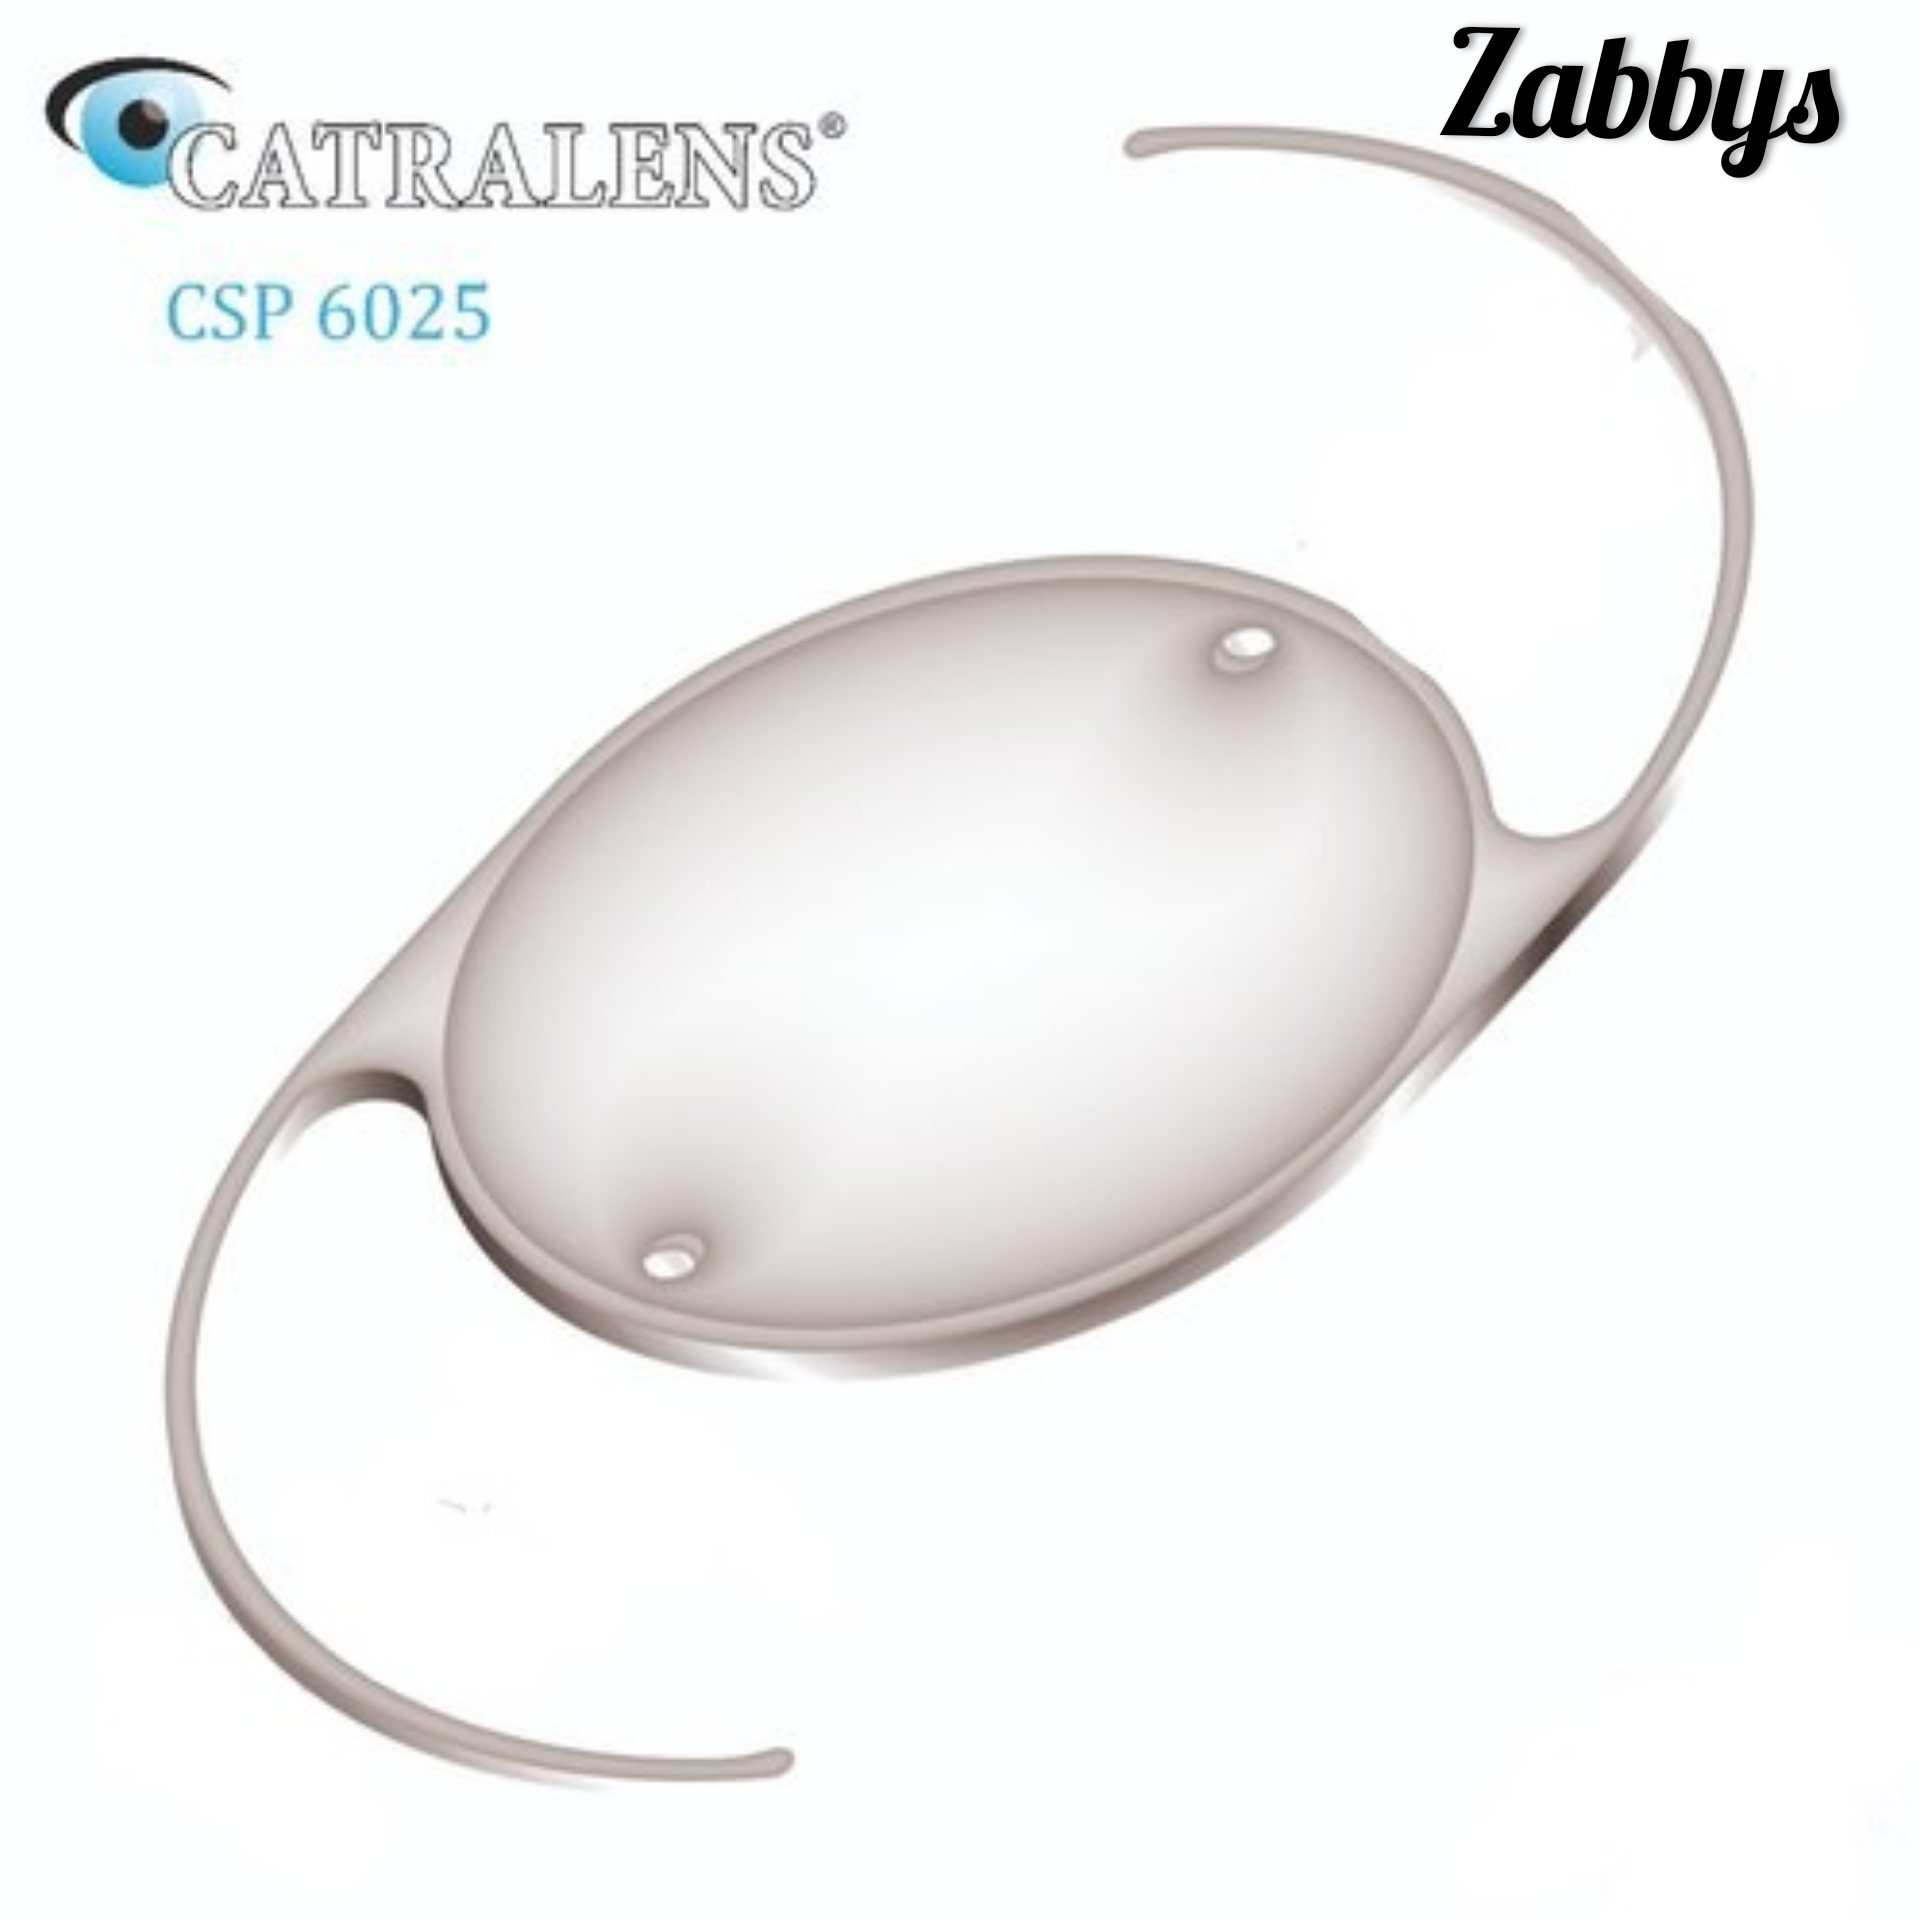 Zabbys Catra Lens